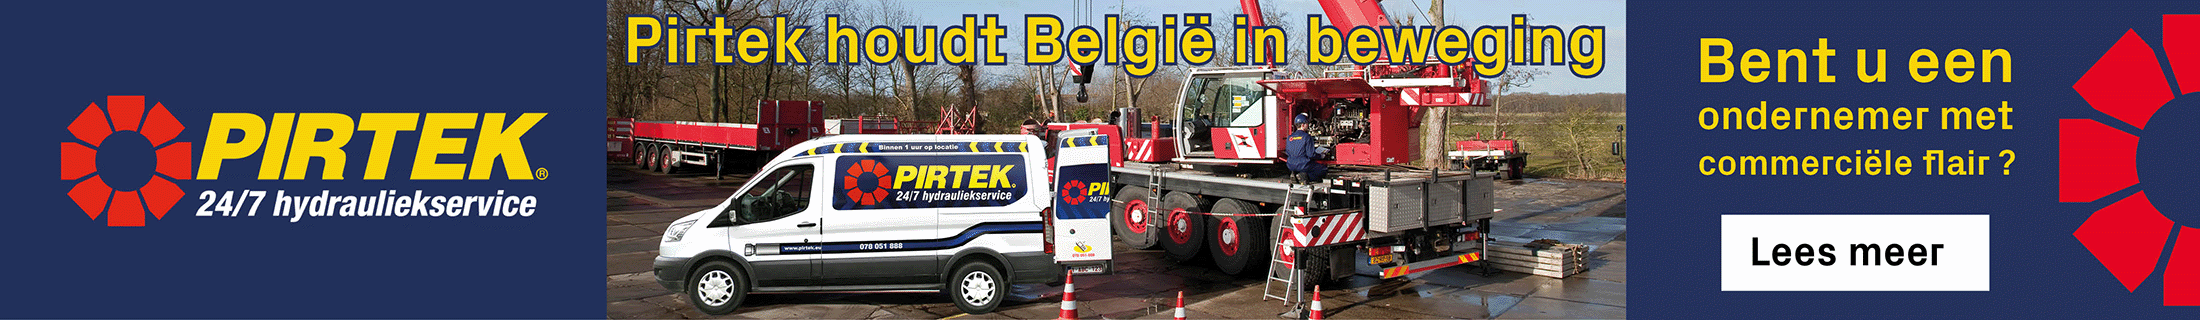 Pirtek Banner Website NL